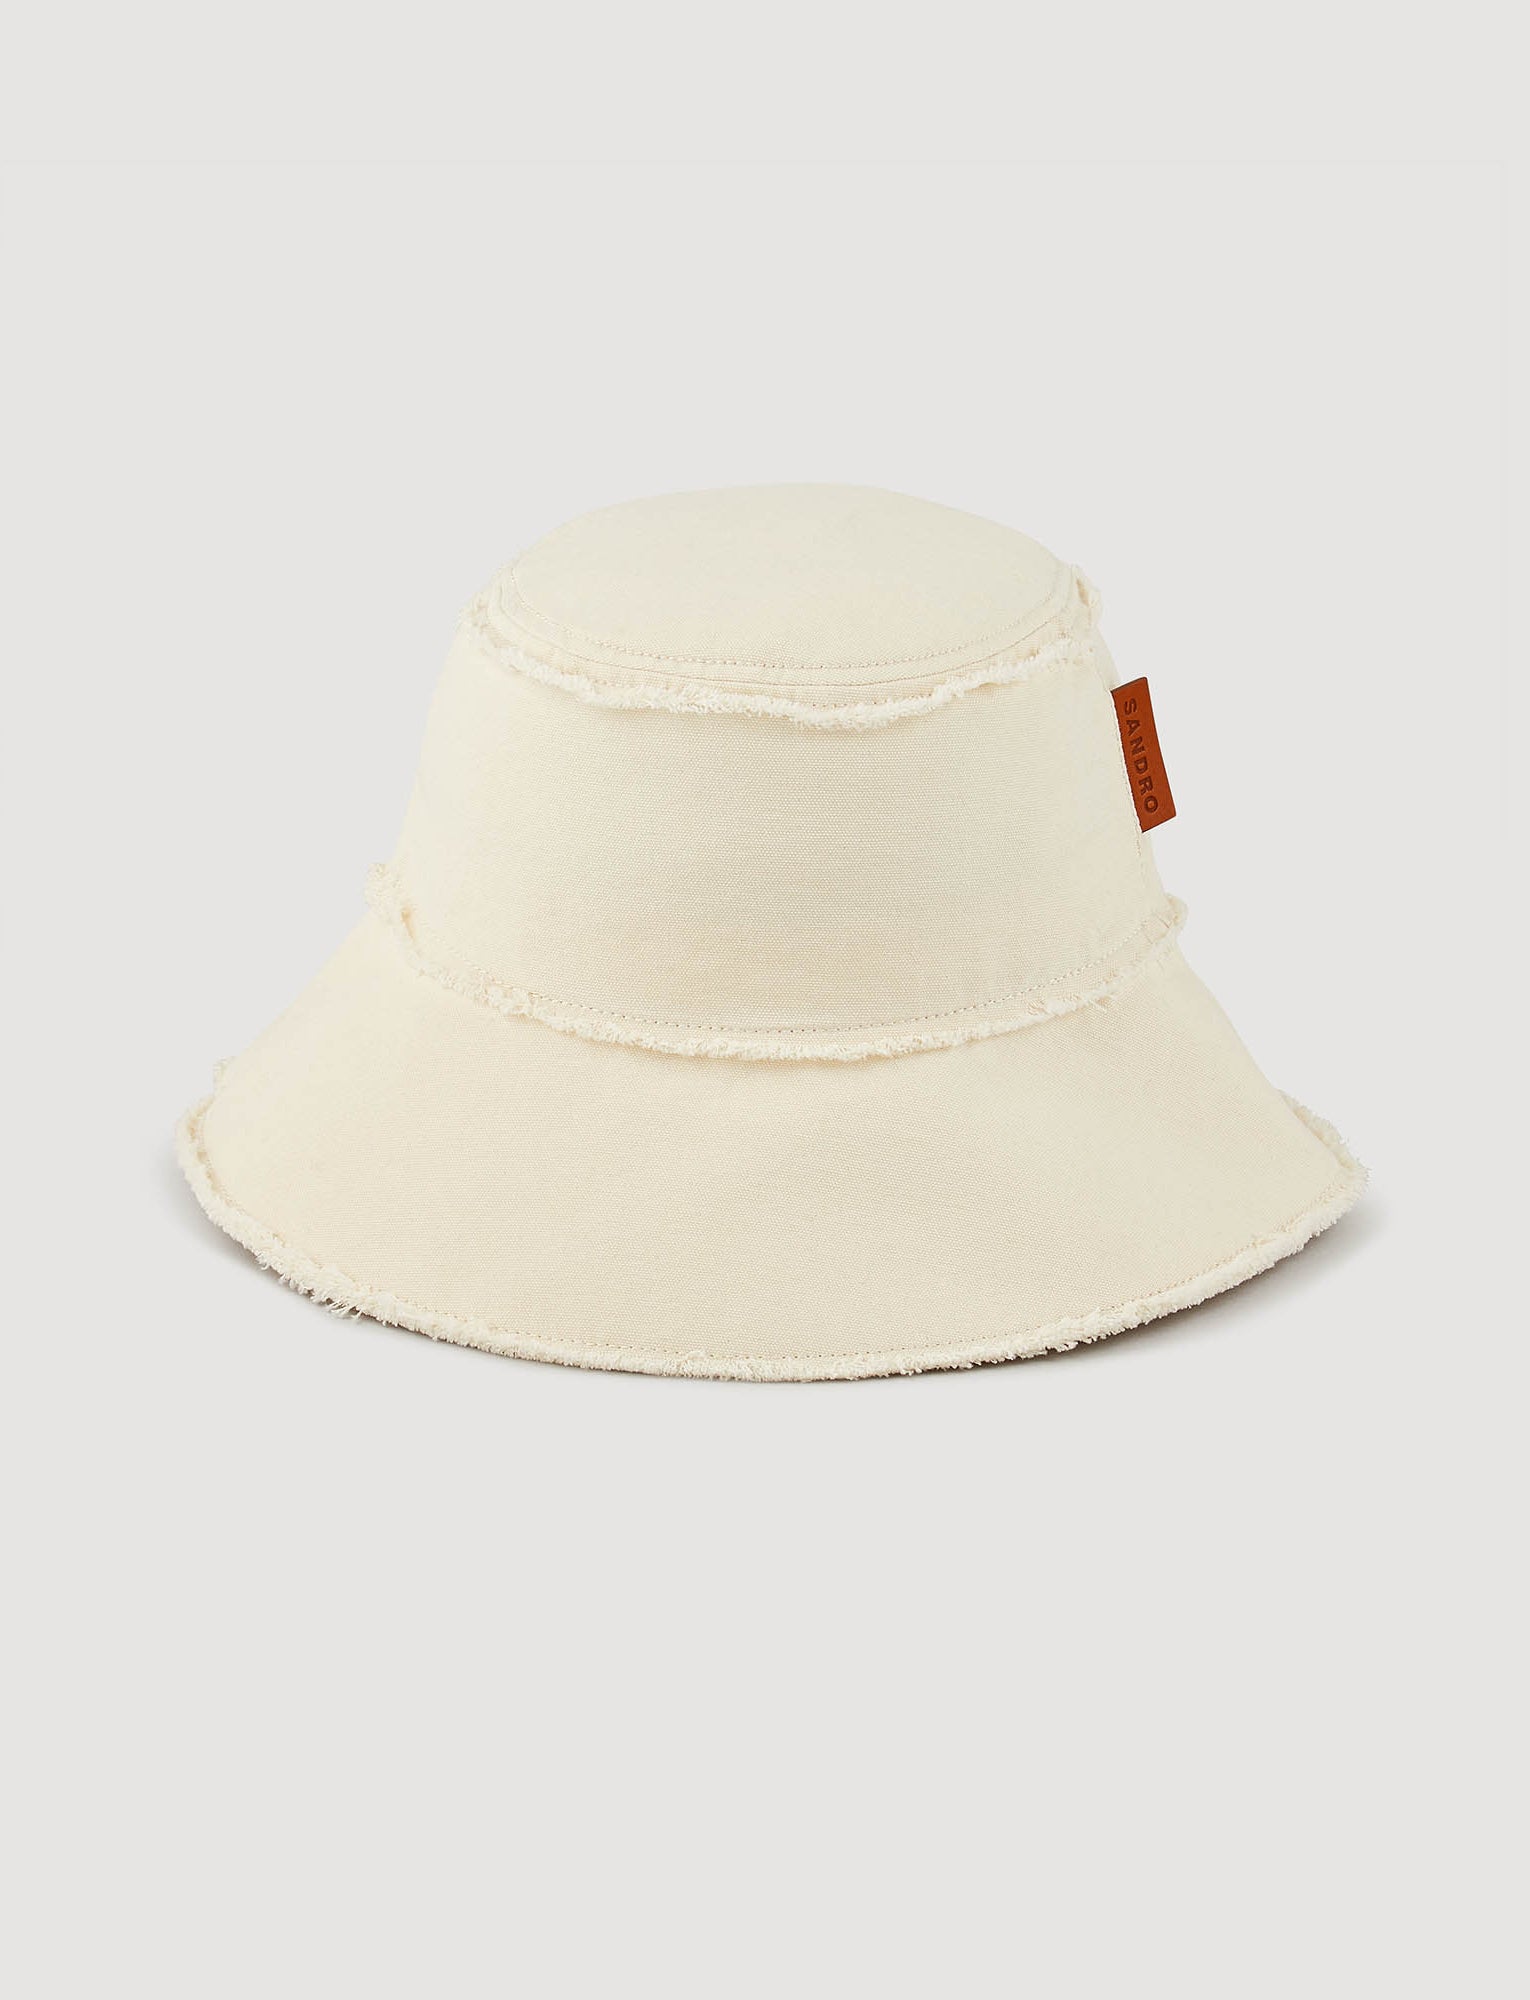 Gorra de pescador de tela de algodón